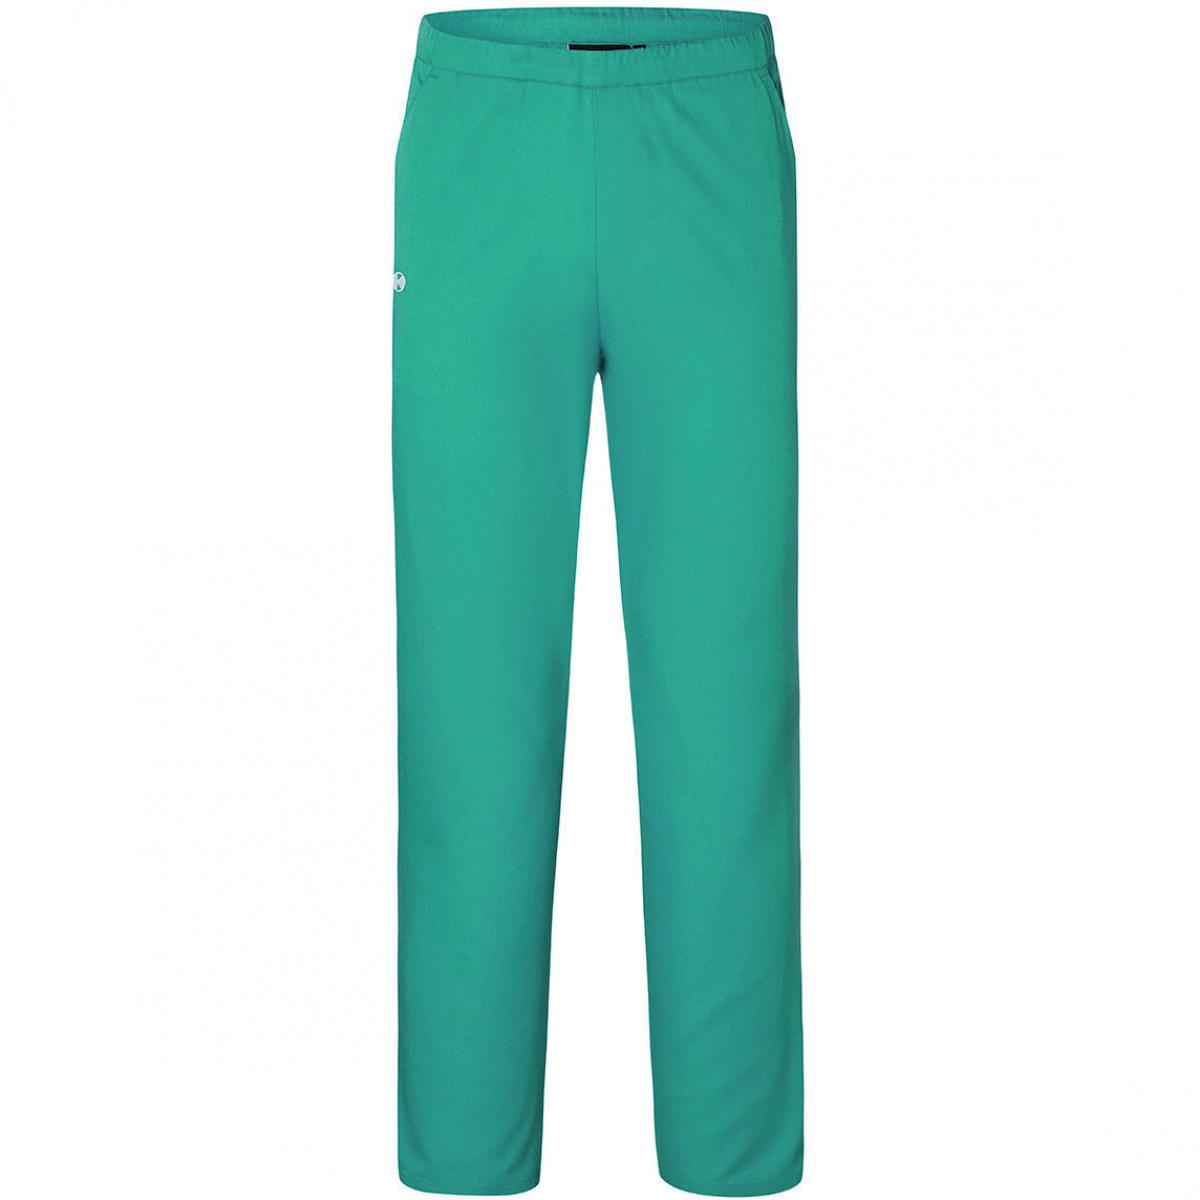 Hersteller: Karlowsky Herstellernummer: HM 14 Artikelbezeichnung: Slip-on Trousers Essential - Schlupfhose unisex Farbe: Emerald Green